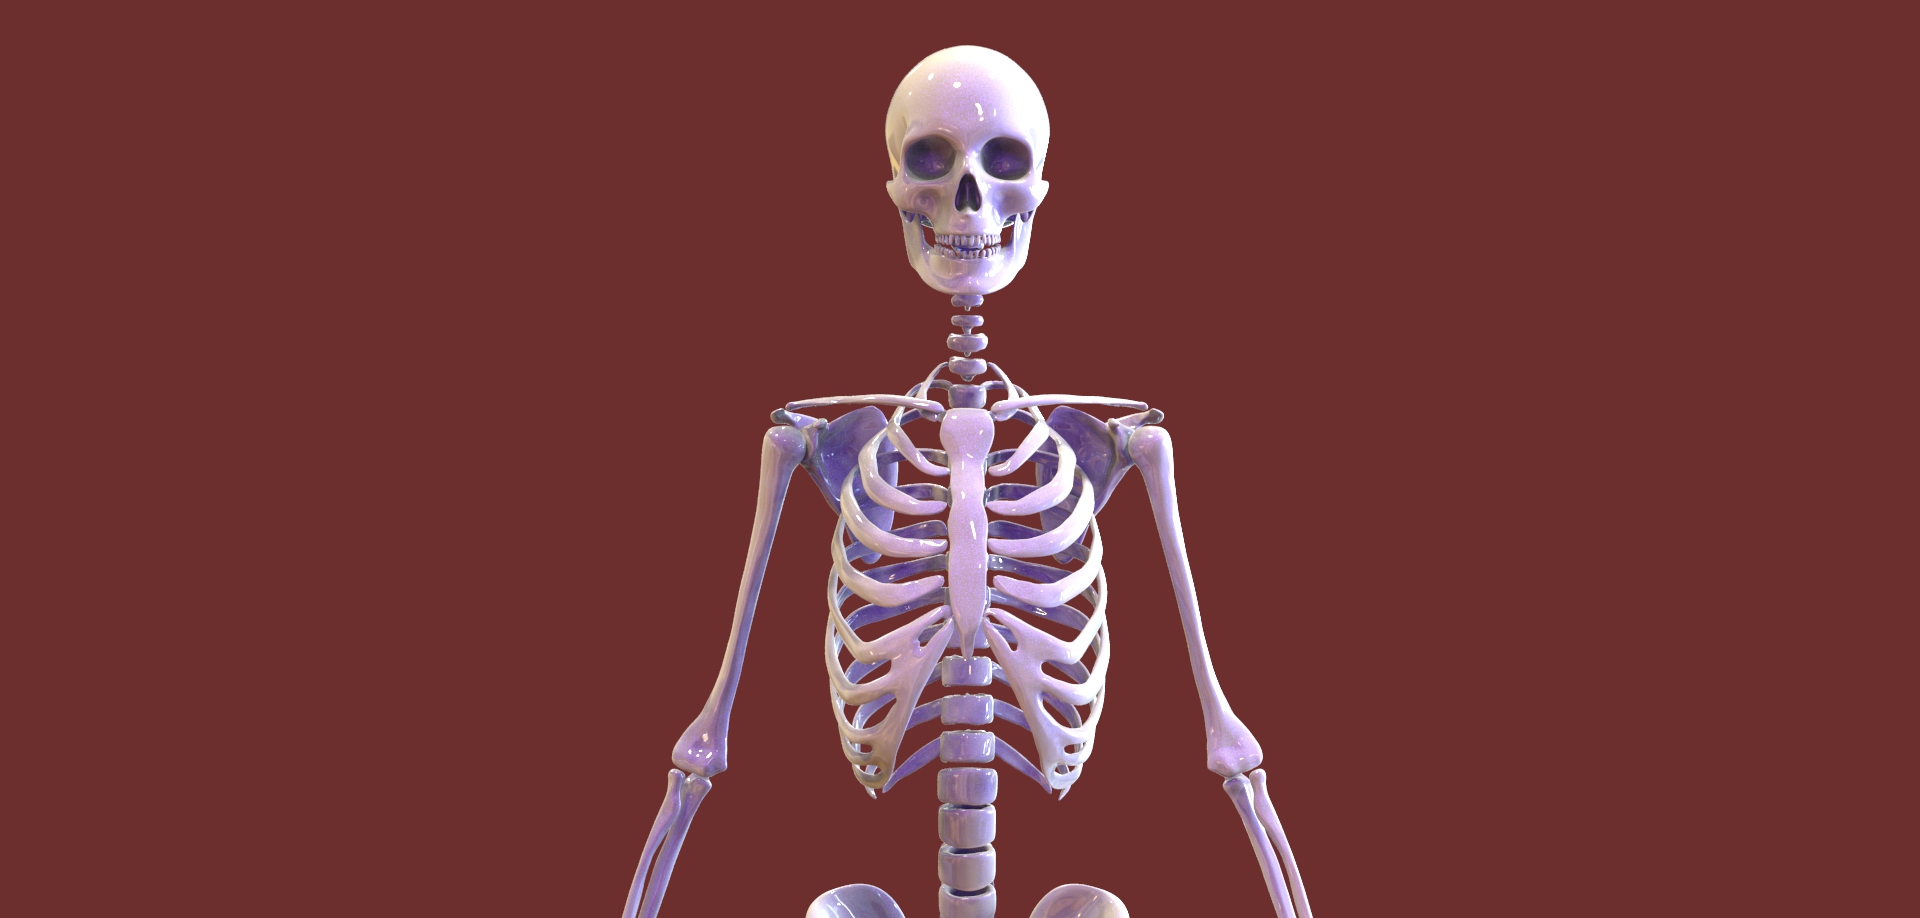 مدل سه بعدی اسکلت بدن انسان